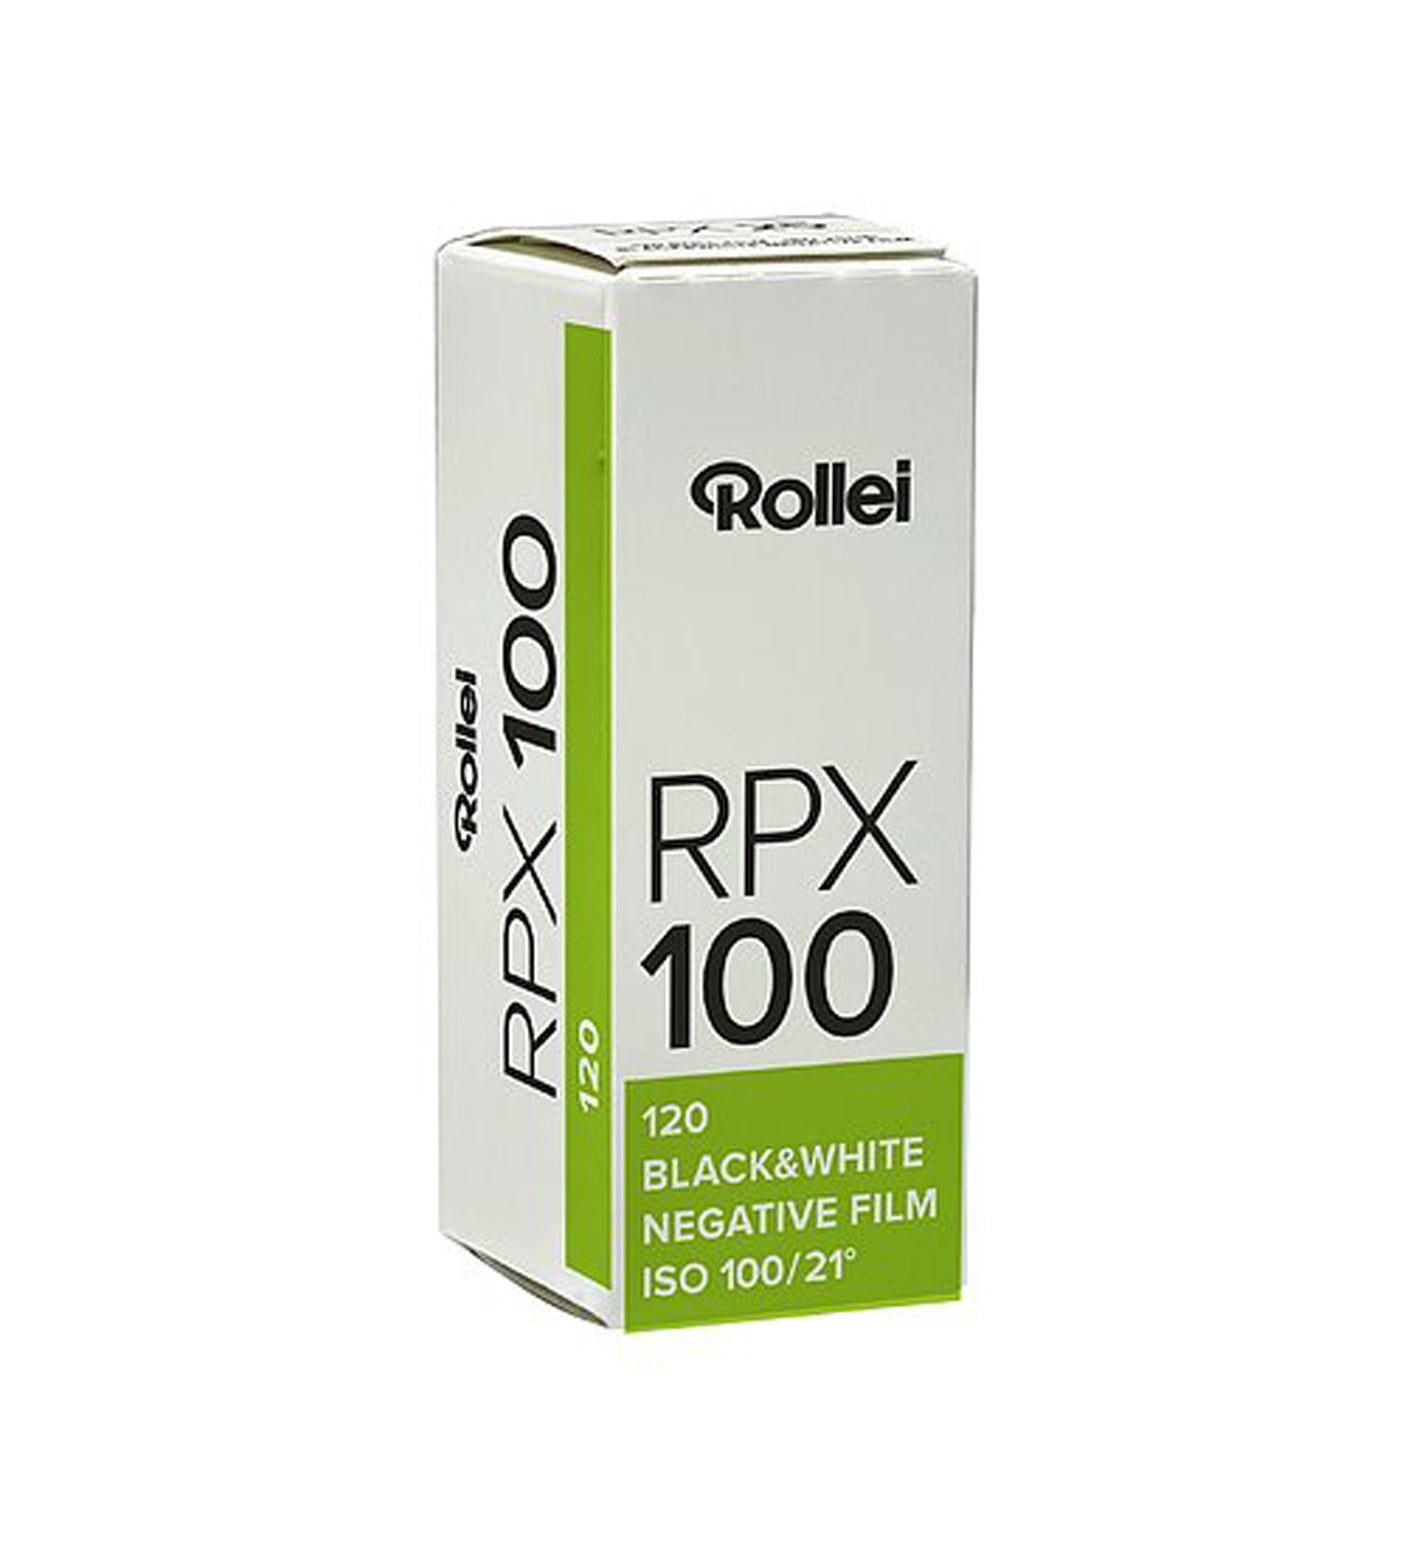 Rollei RPX 100 120 Film (£8.50 incl VAT)